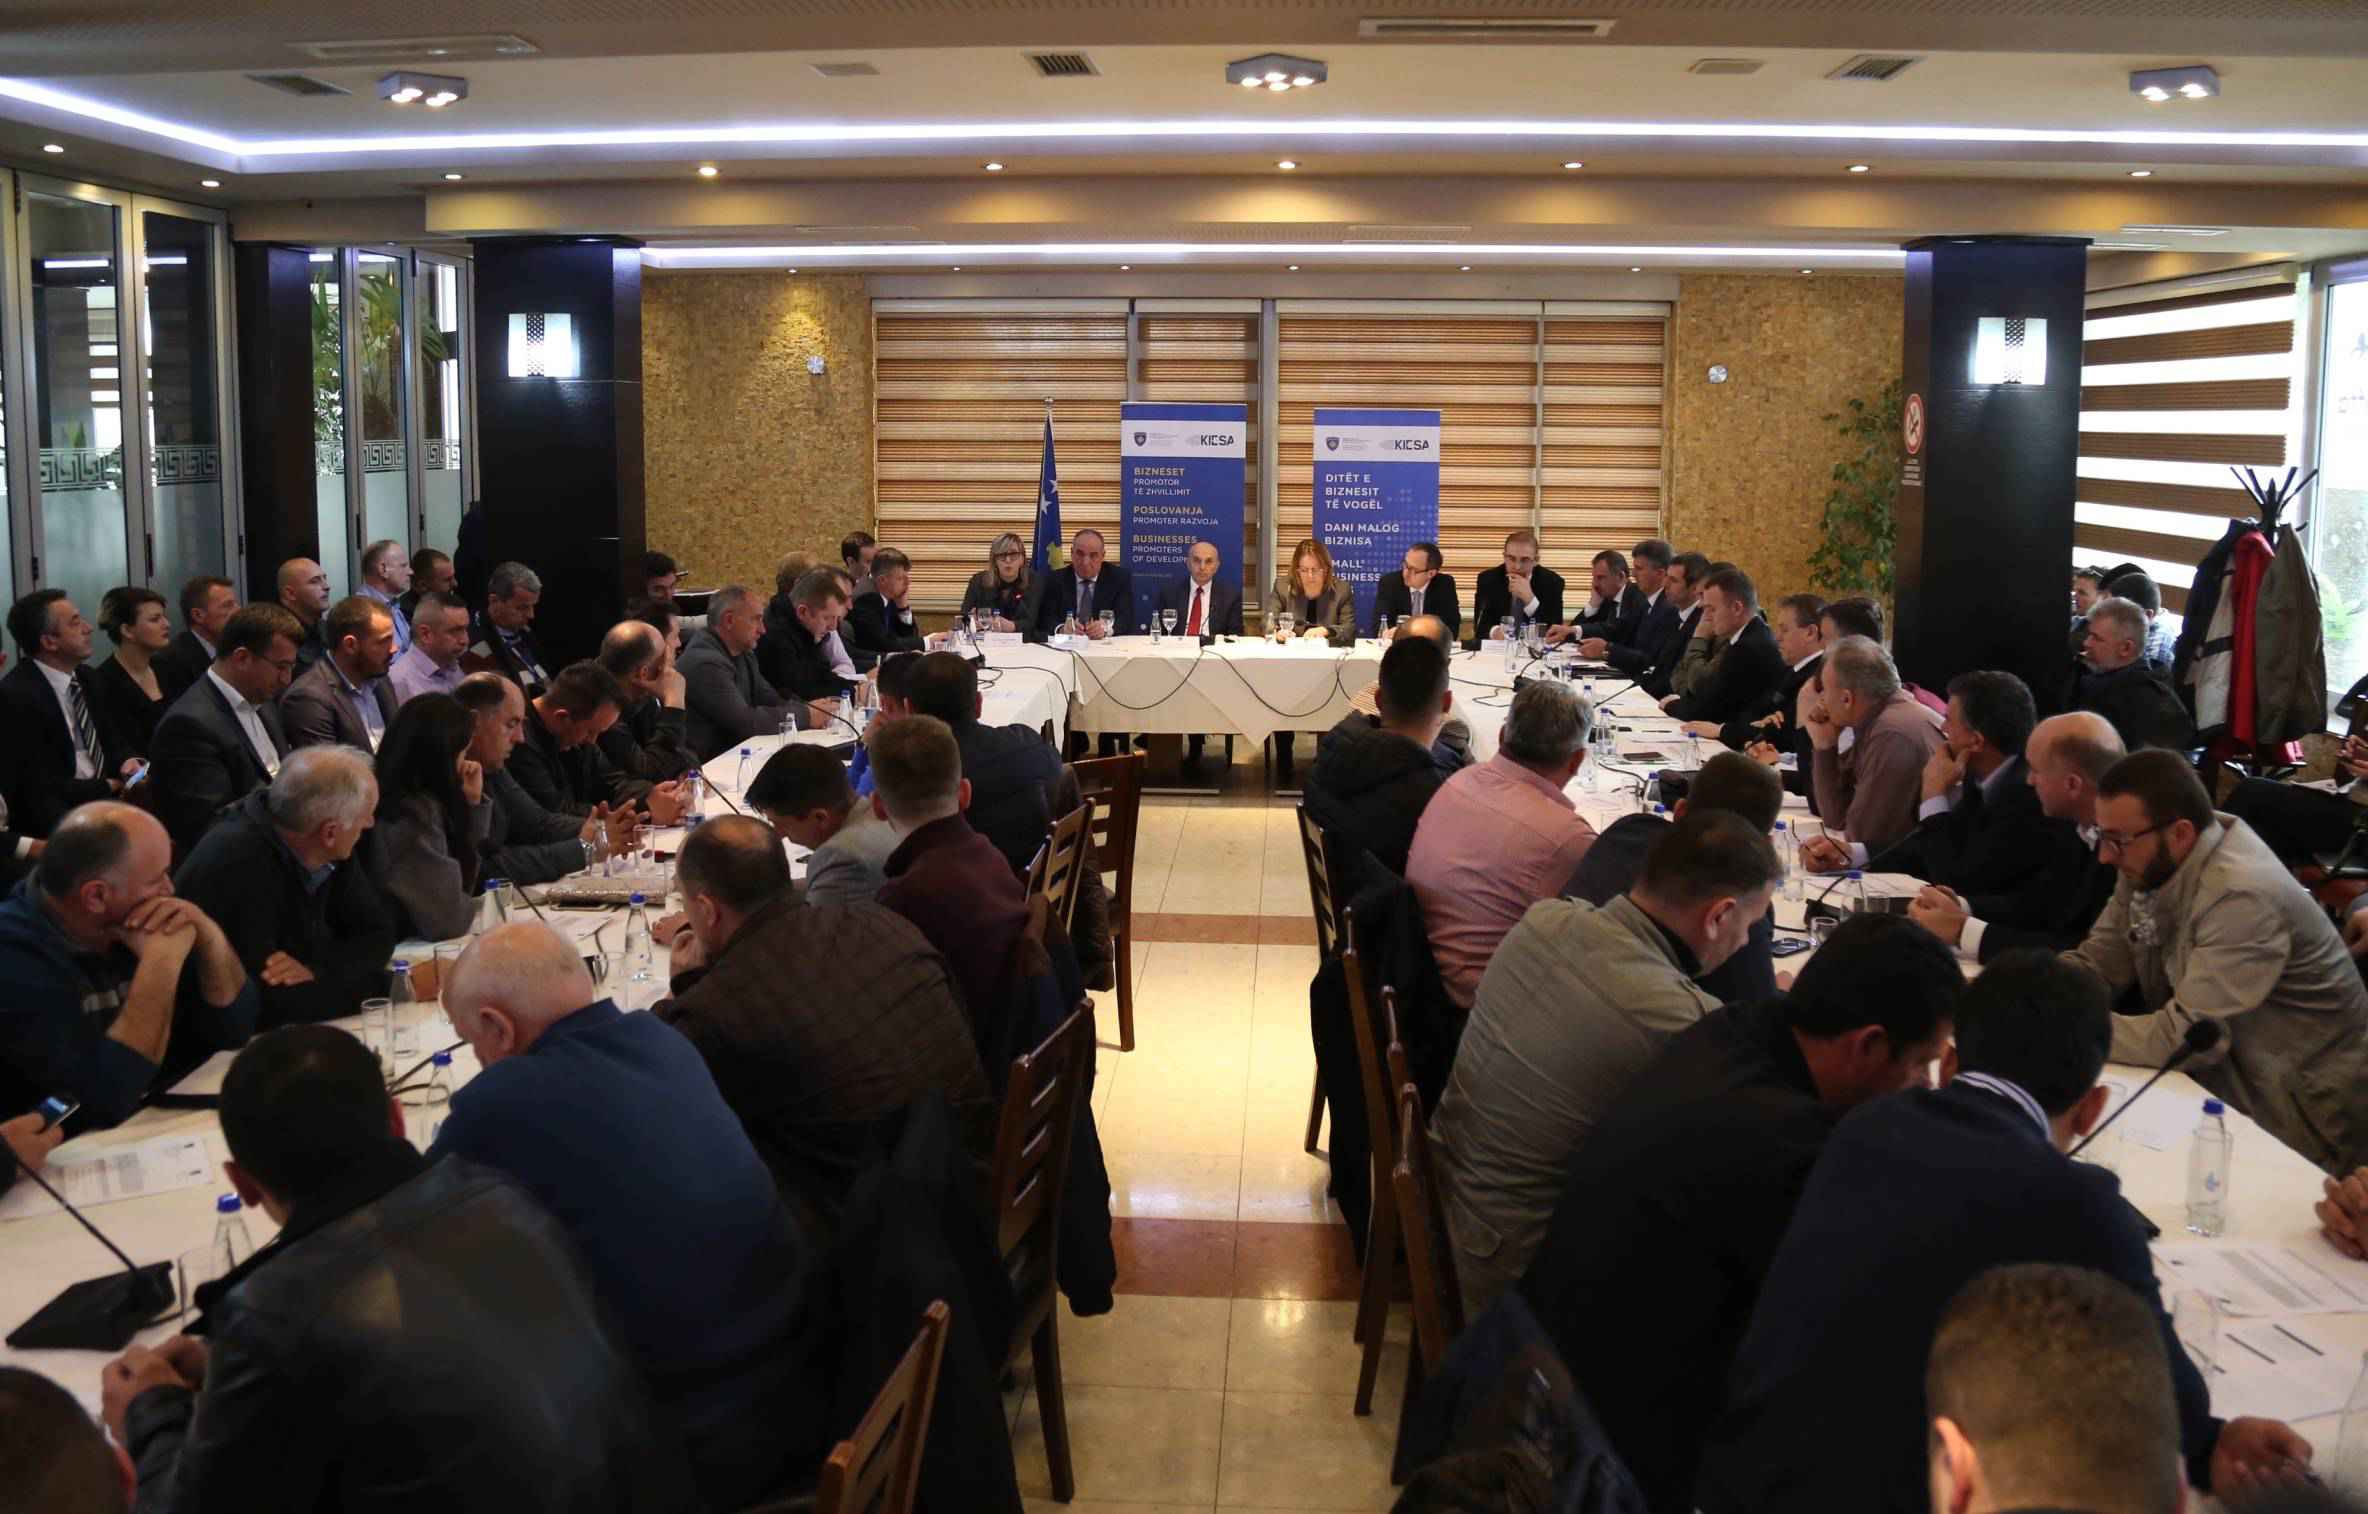 Qeveria fokusohet në rritjen e konkurrueshmërisë së kompanive kosovare në tregun e BE